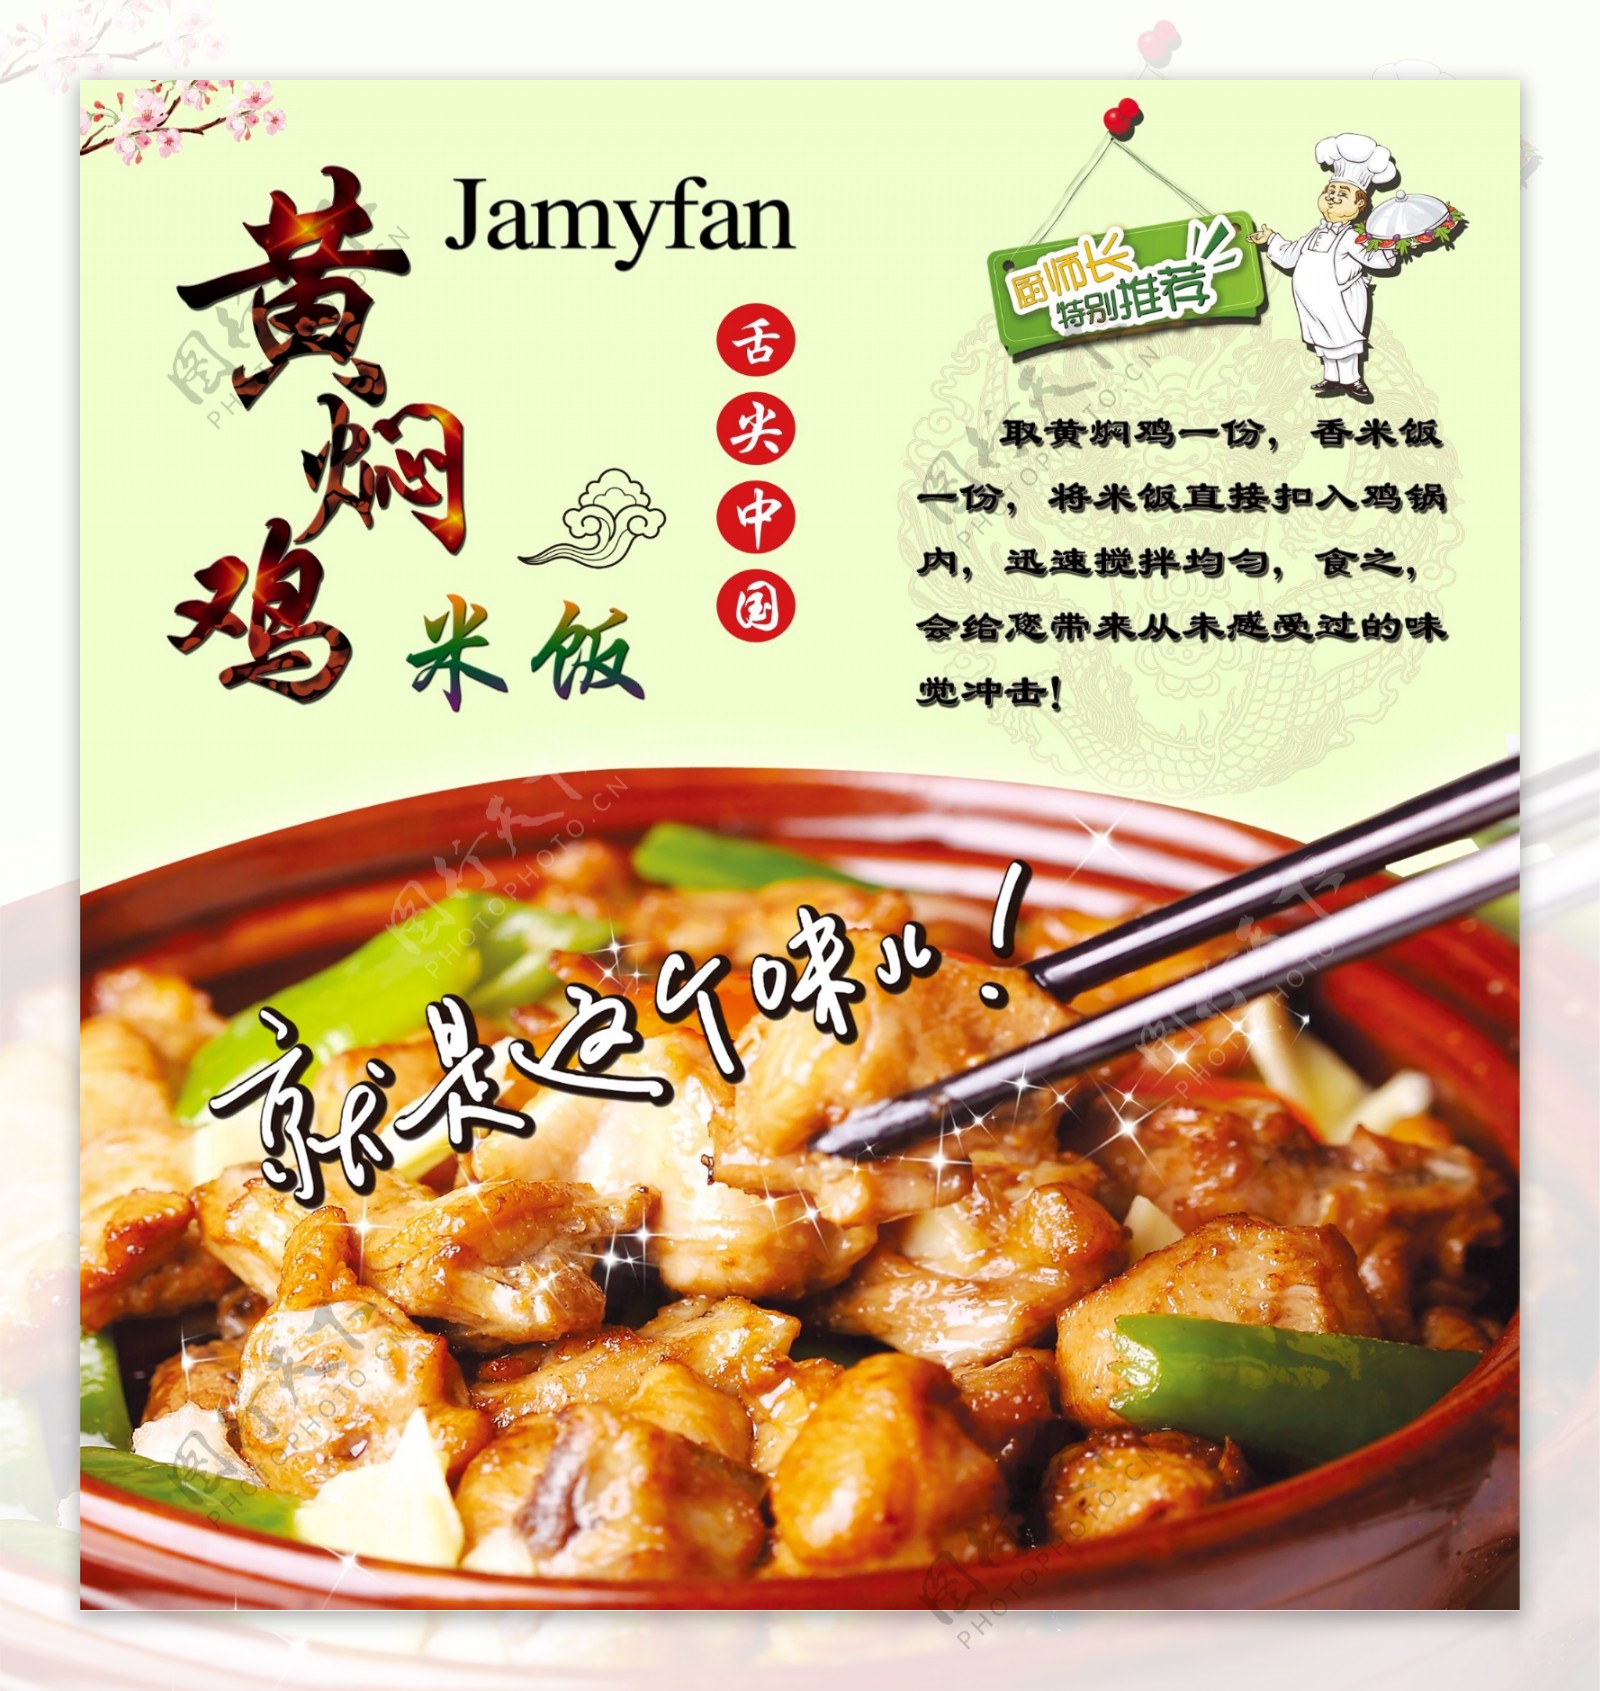 黄焖鸡米饭广告图片